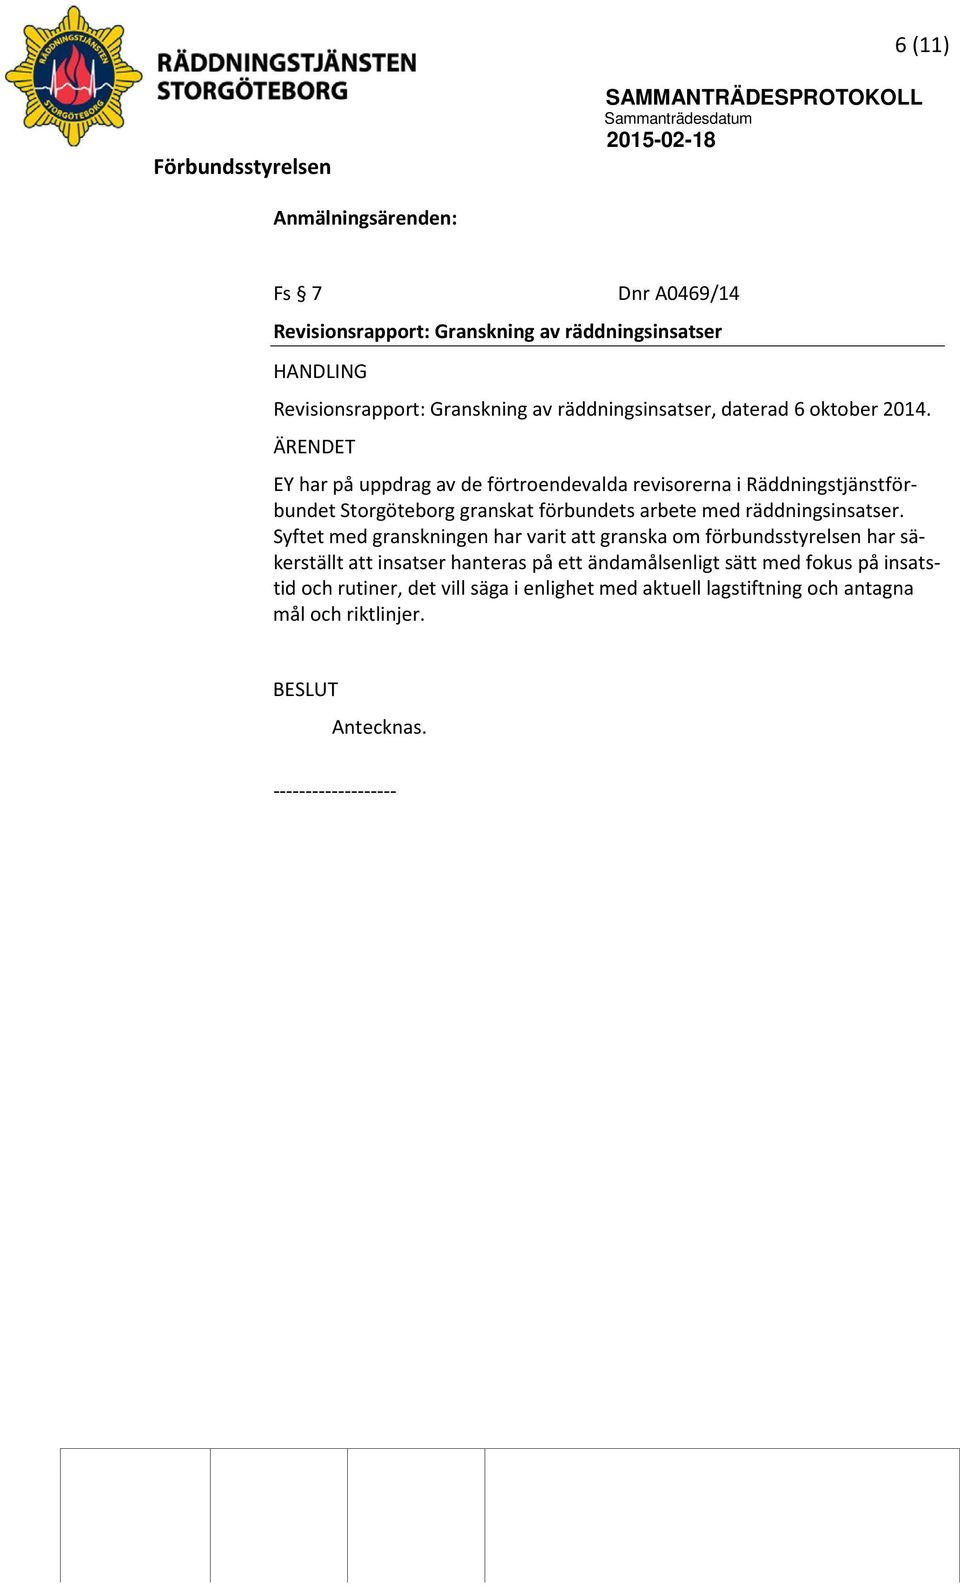 ÄRENDET EY har på uppdrag av de förtroendevalda revisorerna i Räddningstjänstförbundet Storgöteborg granskat förbundets arbete med räddningsinsatser.